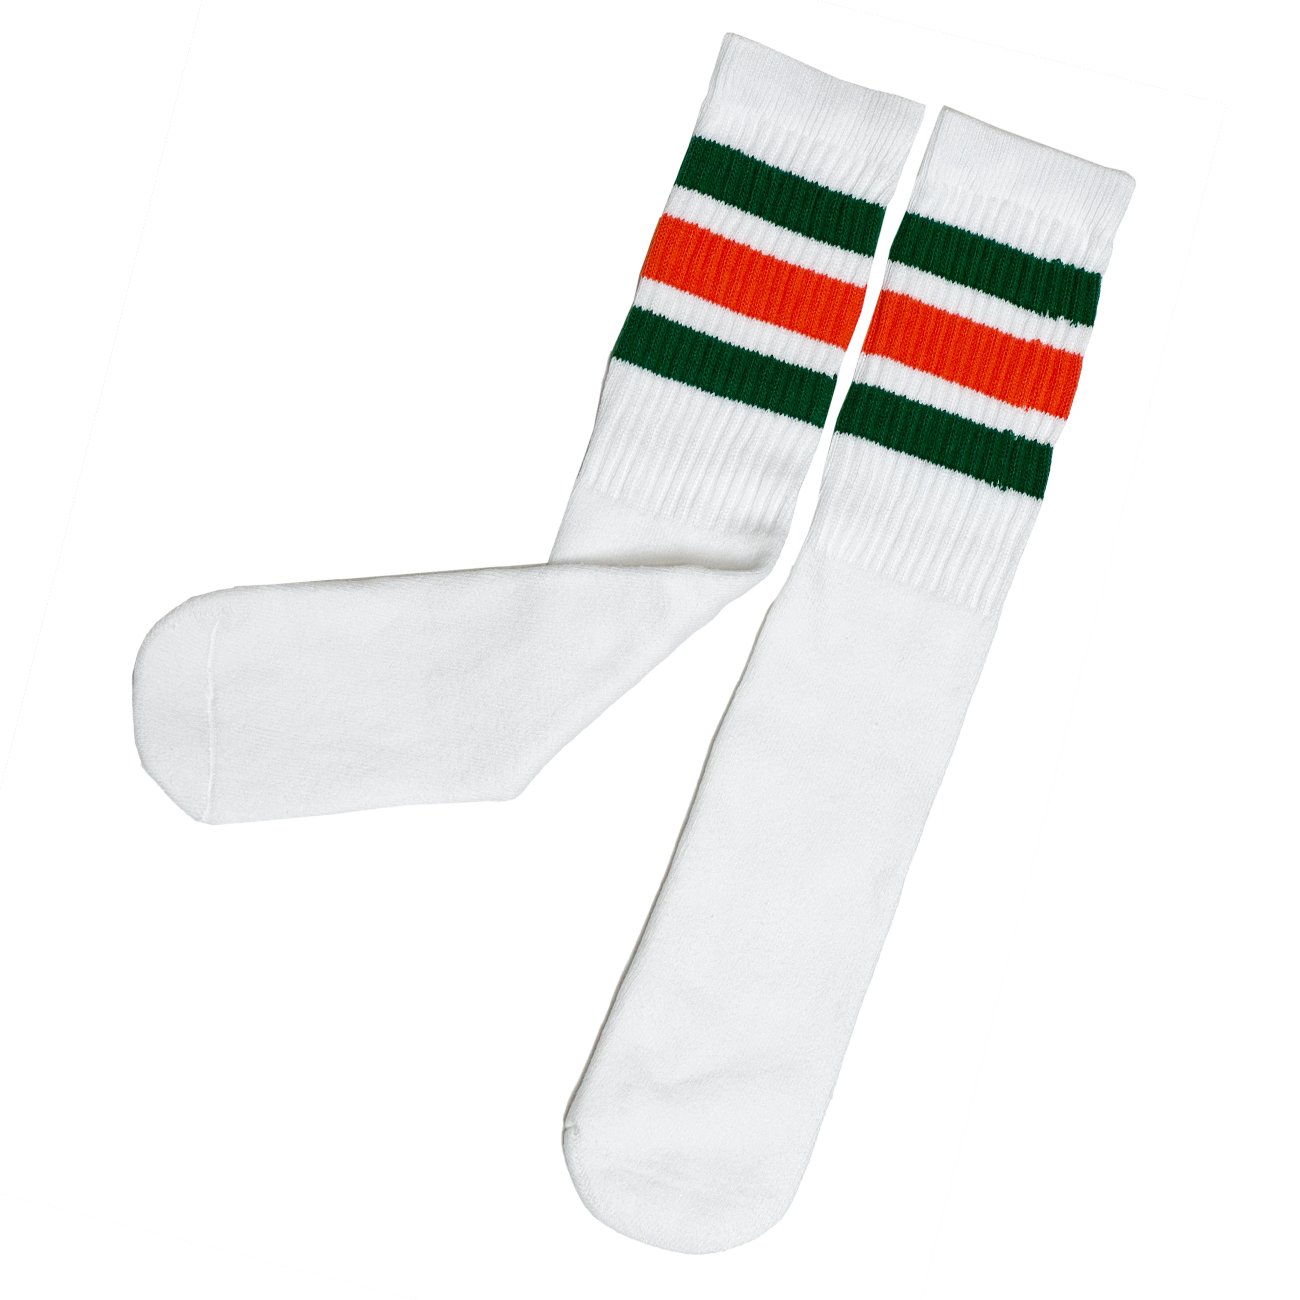 19” Tube Socks by Skater Socks